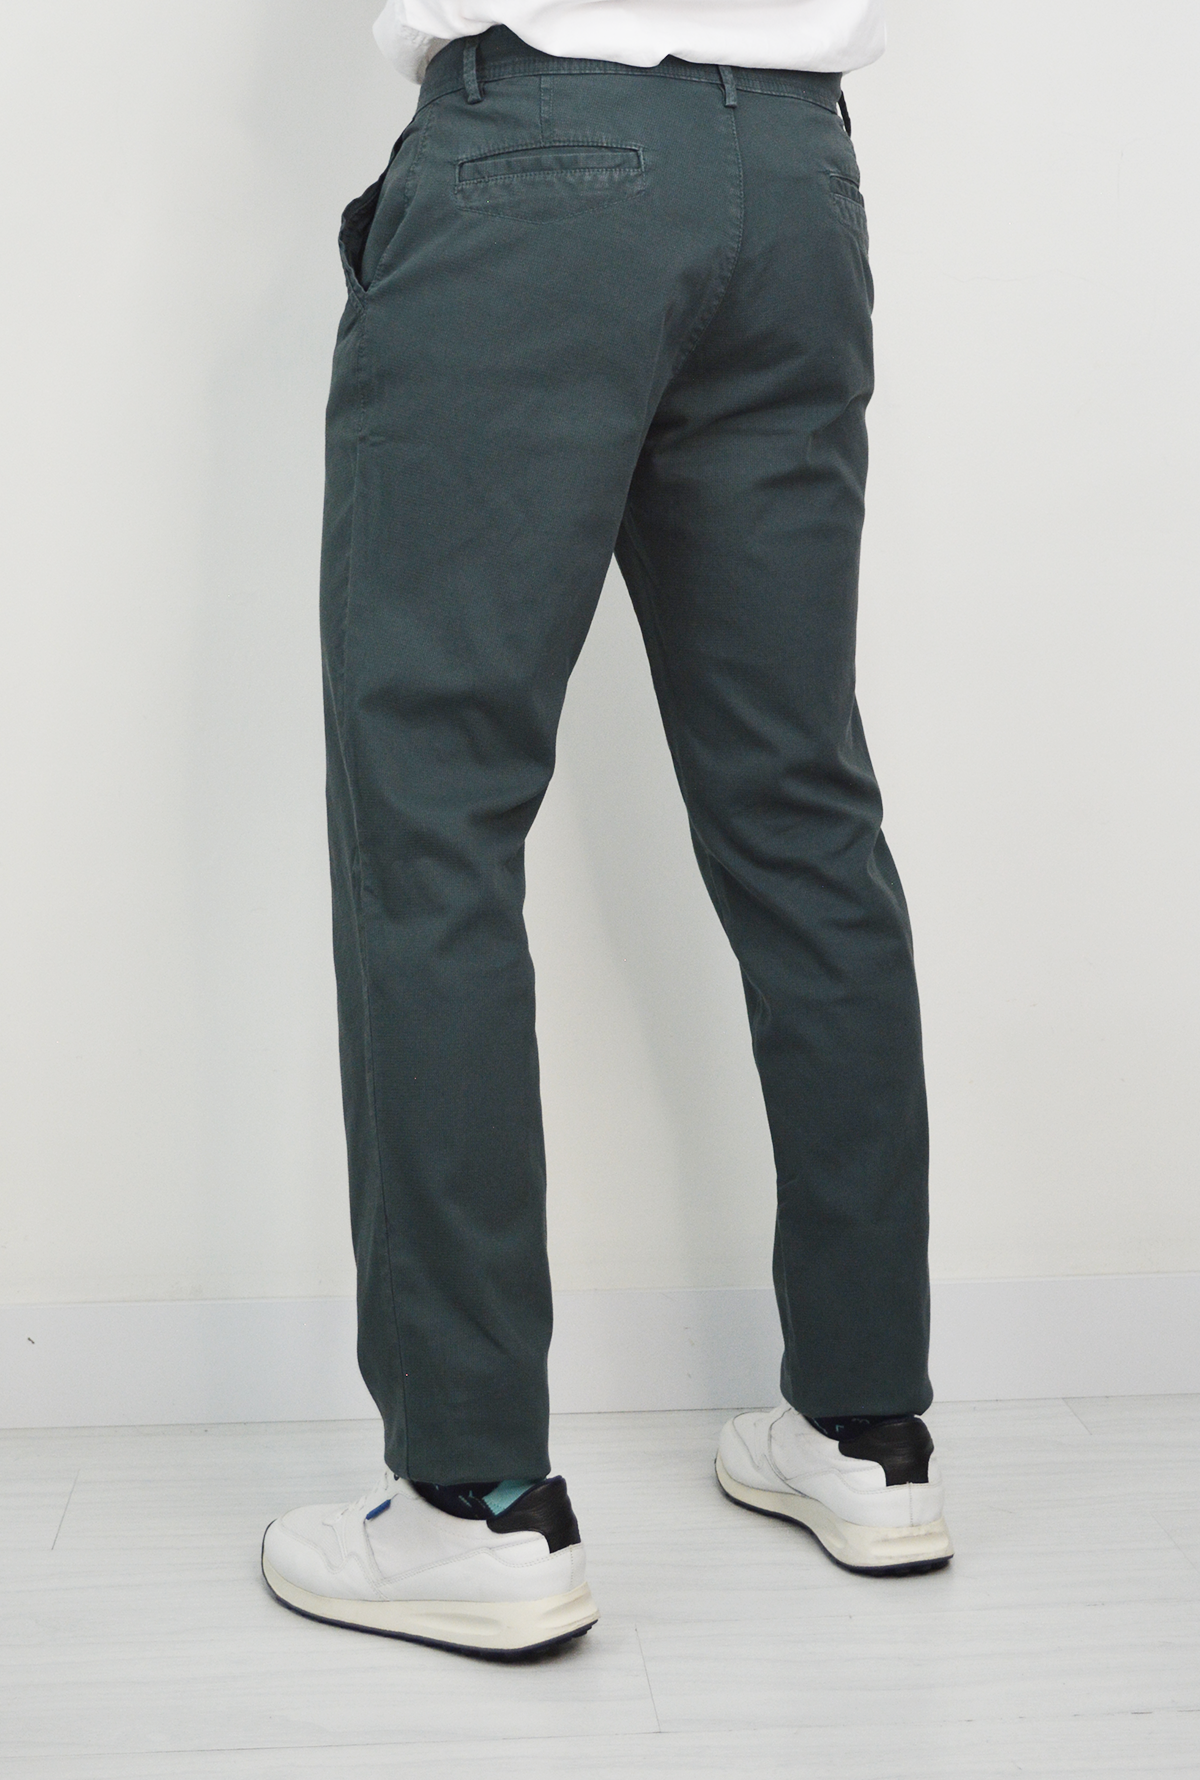 Pantalón Verde Para Hombre DMP2108